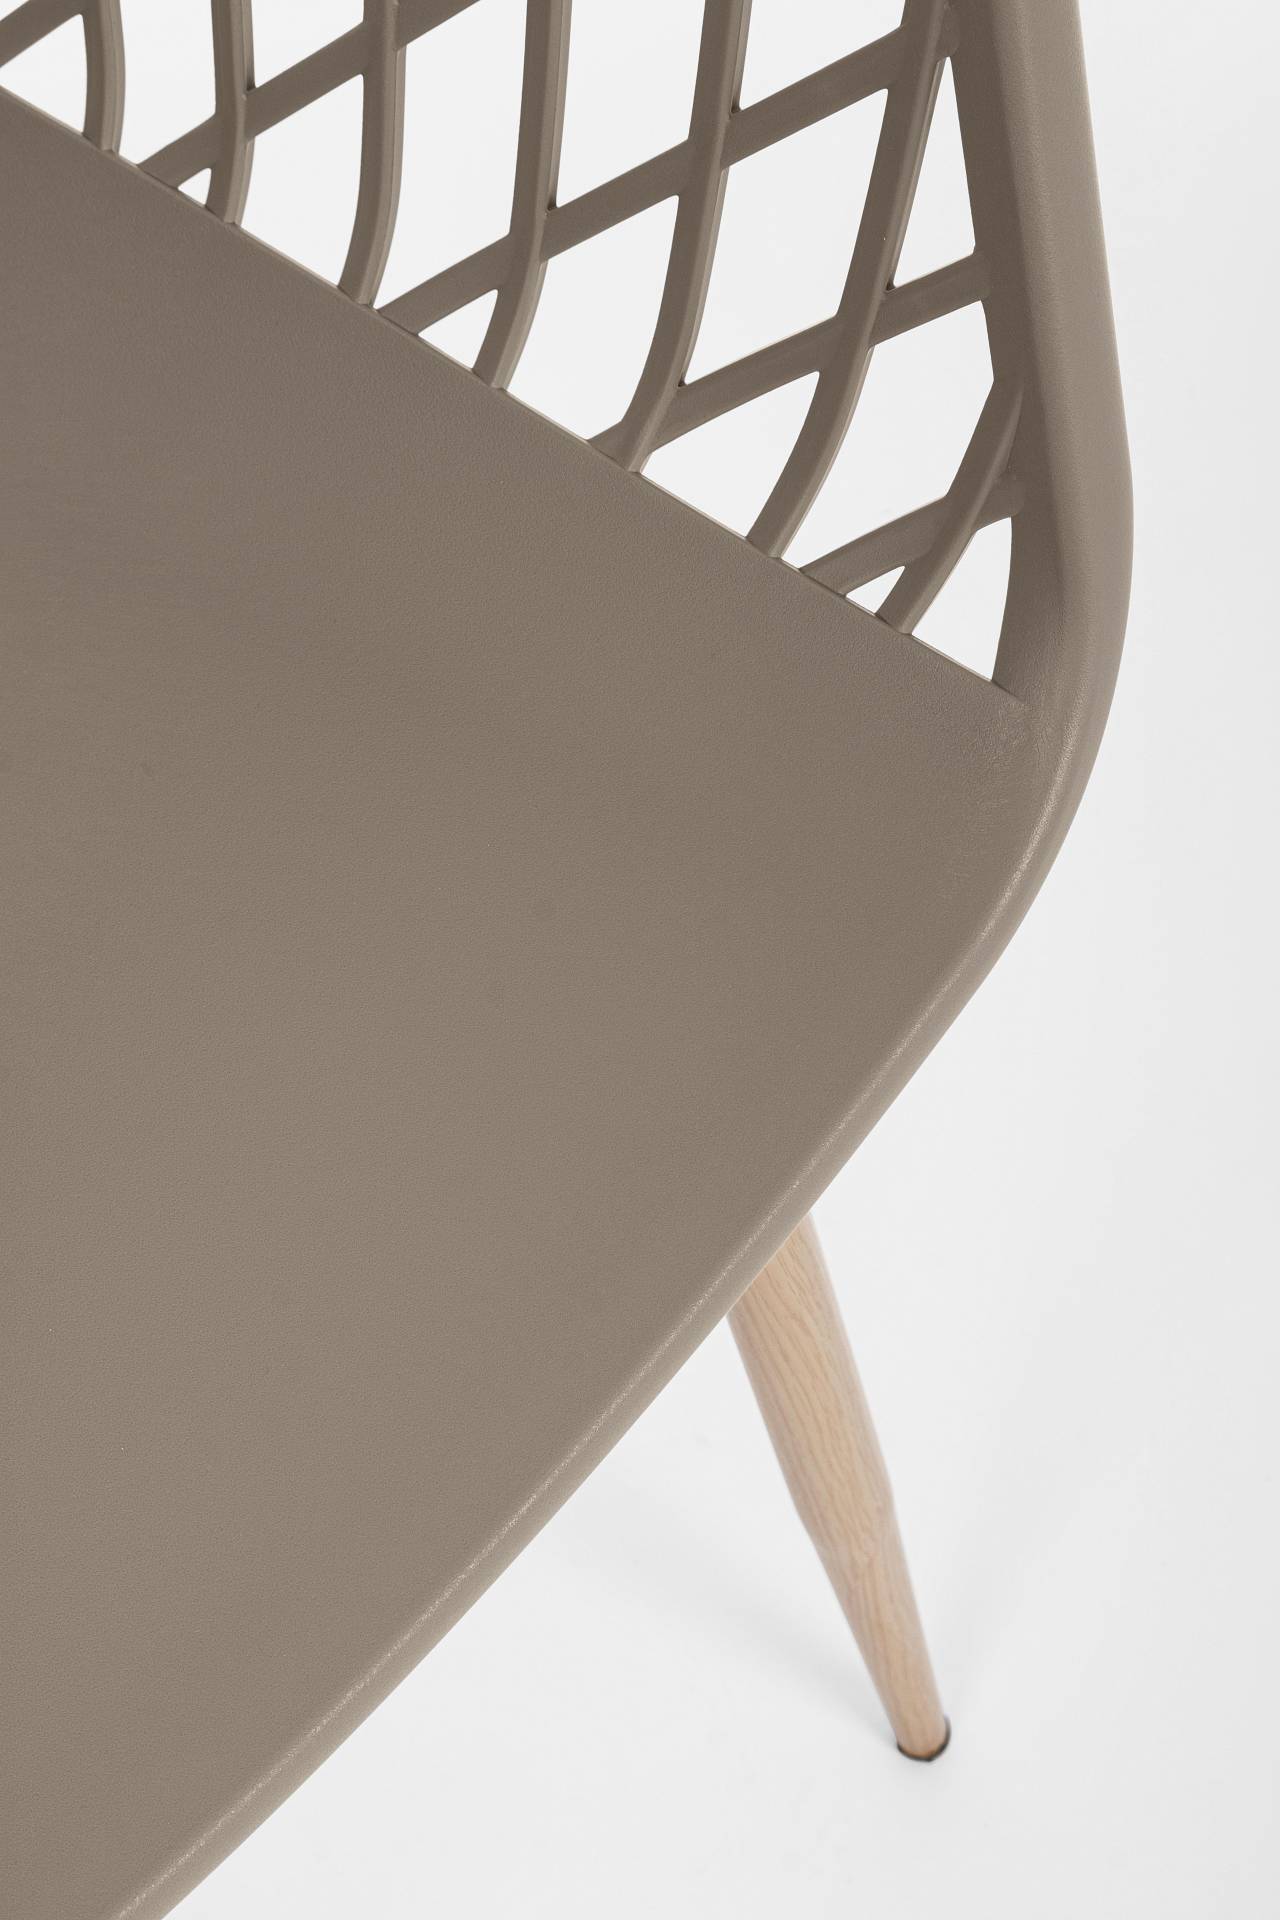 Der Stuhl Optik wurde aus Kunststoff gefertigt, welcher einen Taupe Farbton besitzt. Das Gestell ist aus Metall und hat eine Holz-Optik. Das Design des Stuhls ist modern gehalten. Die Sitzhöhe beträgt 44 cm.